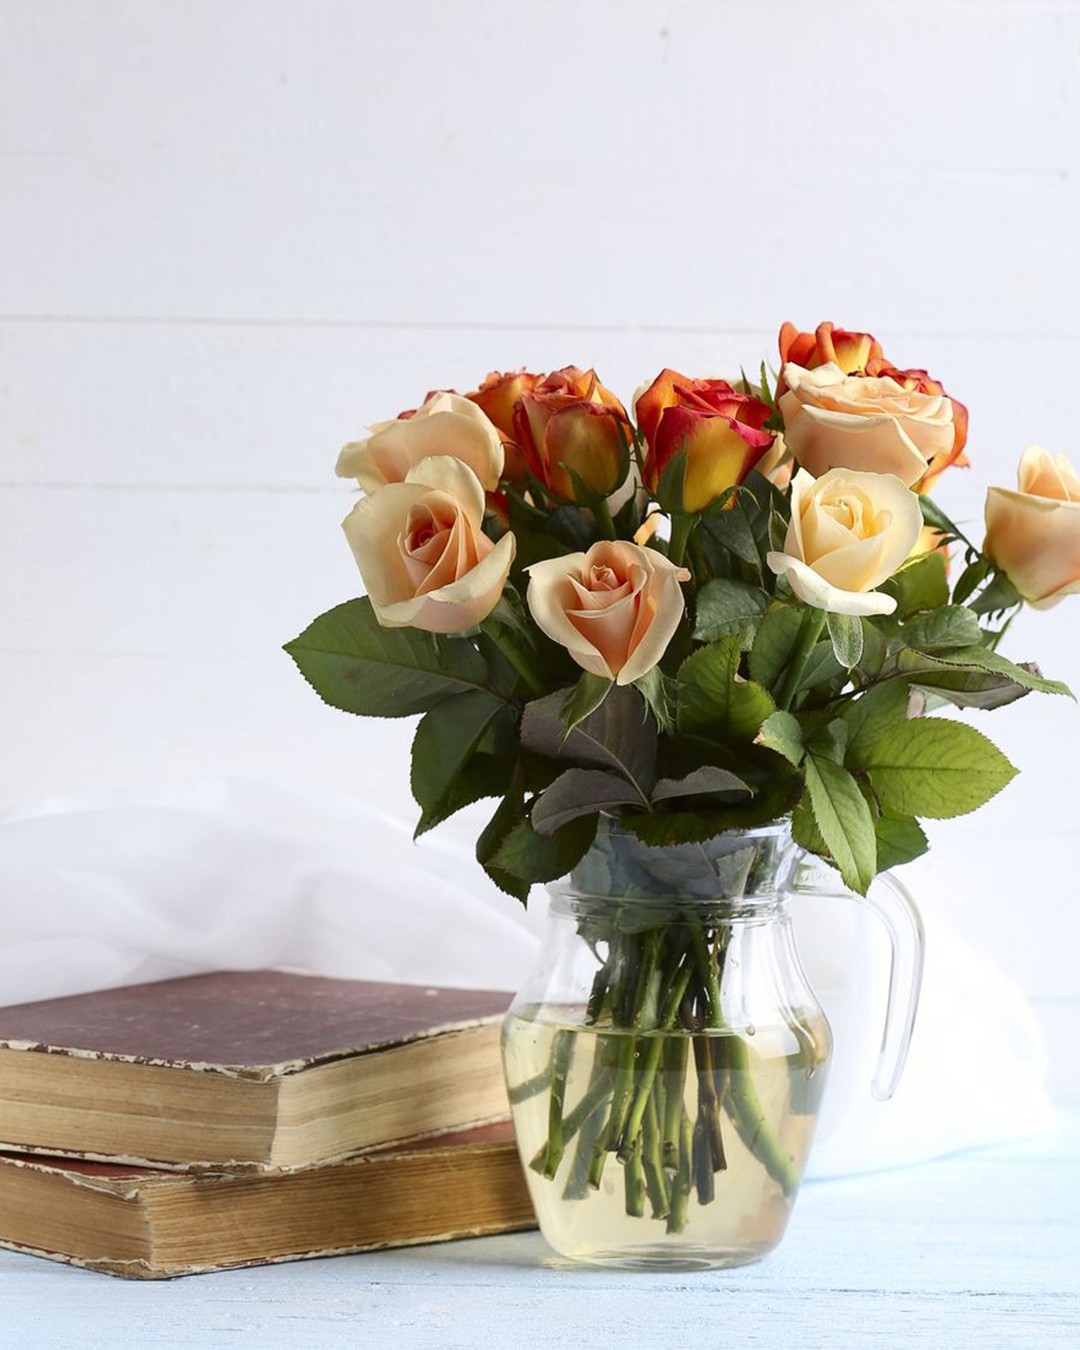 Fitar as rosas com o olhar durante o dia, por si só, já promove bem estar (Foto: 5second / Getty Images / Divulgação)